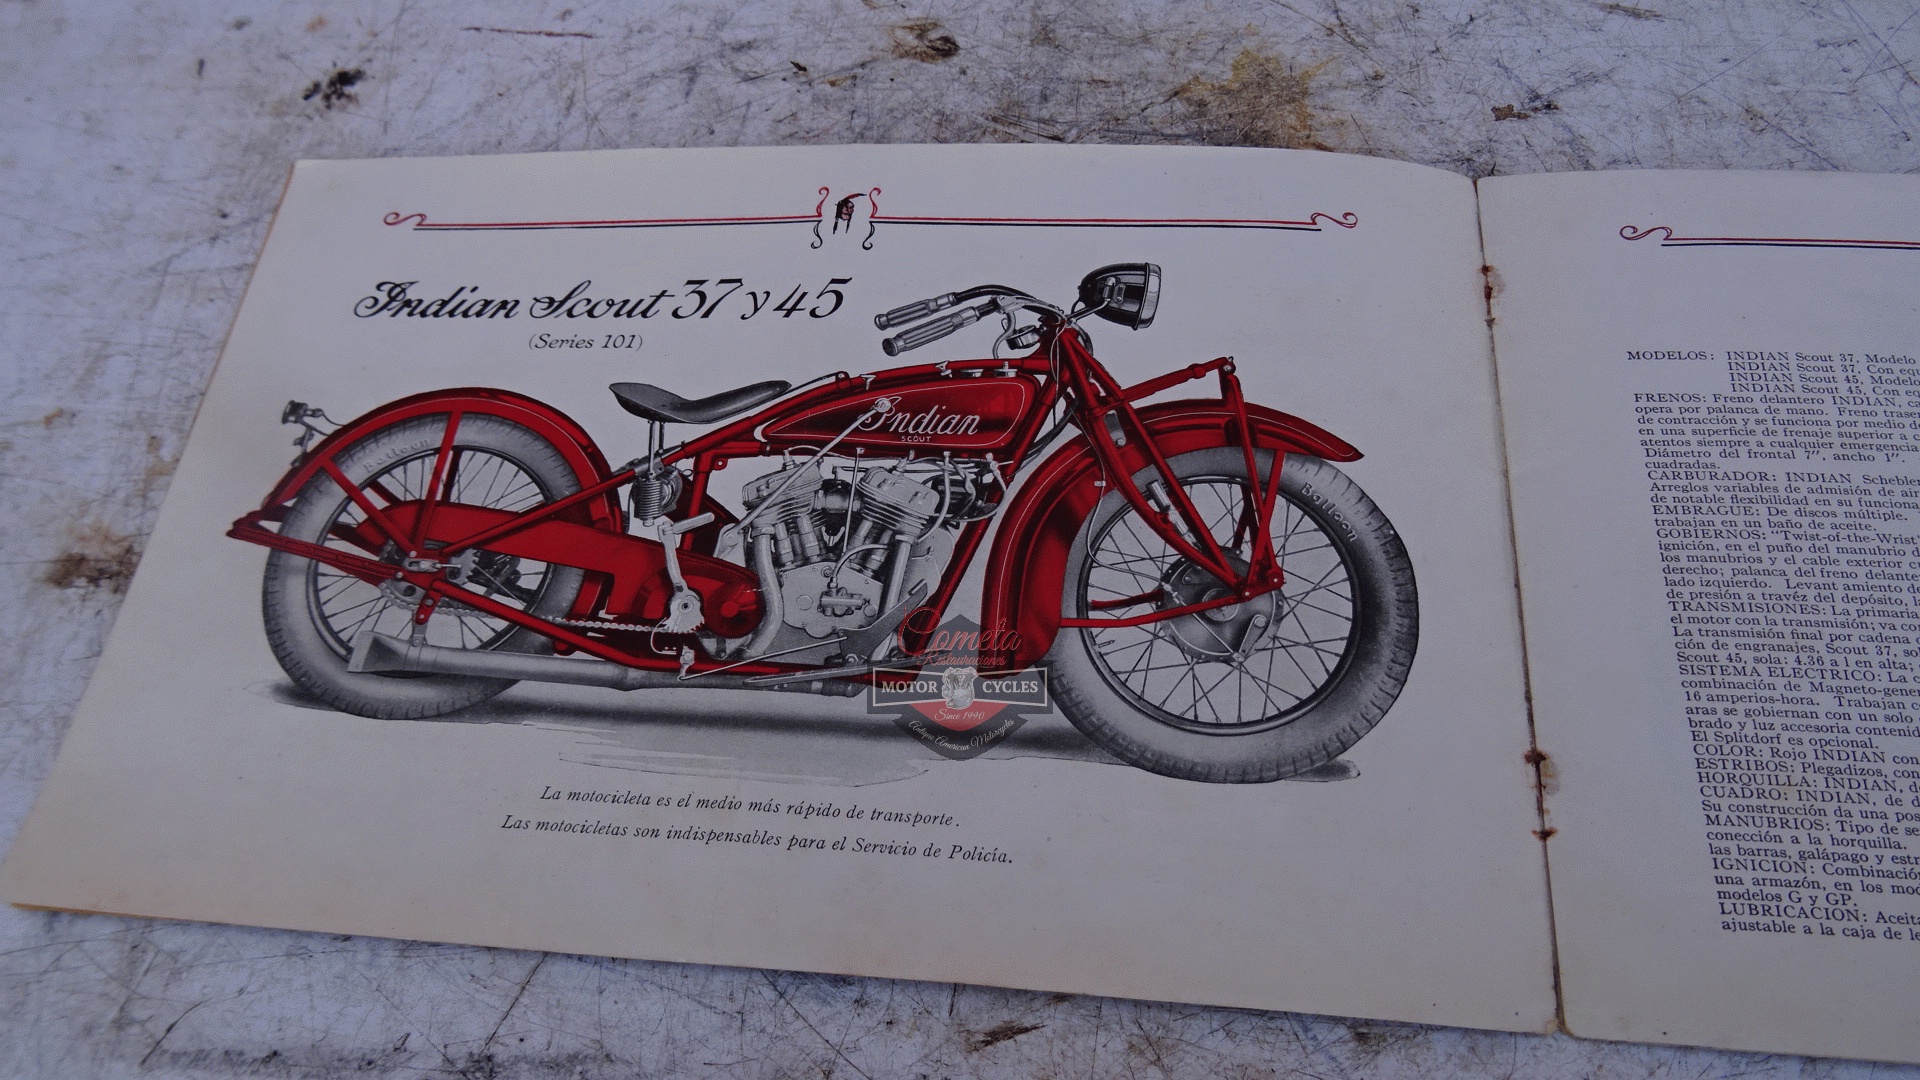 CATALOGO ORIGINAL MOTOCICLETAS INDIAN AÑO 1928  TODOS LOS MODELOS 